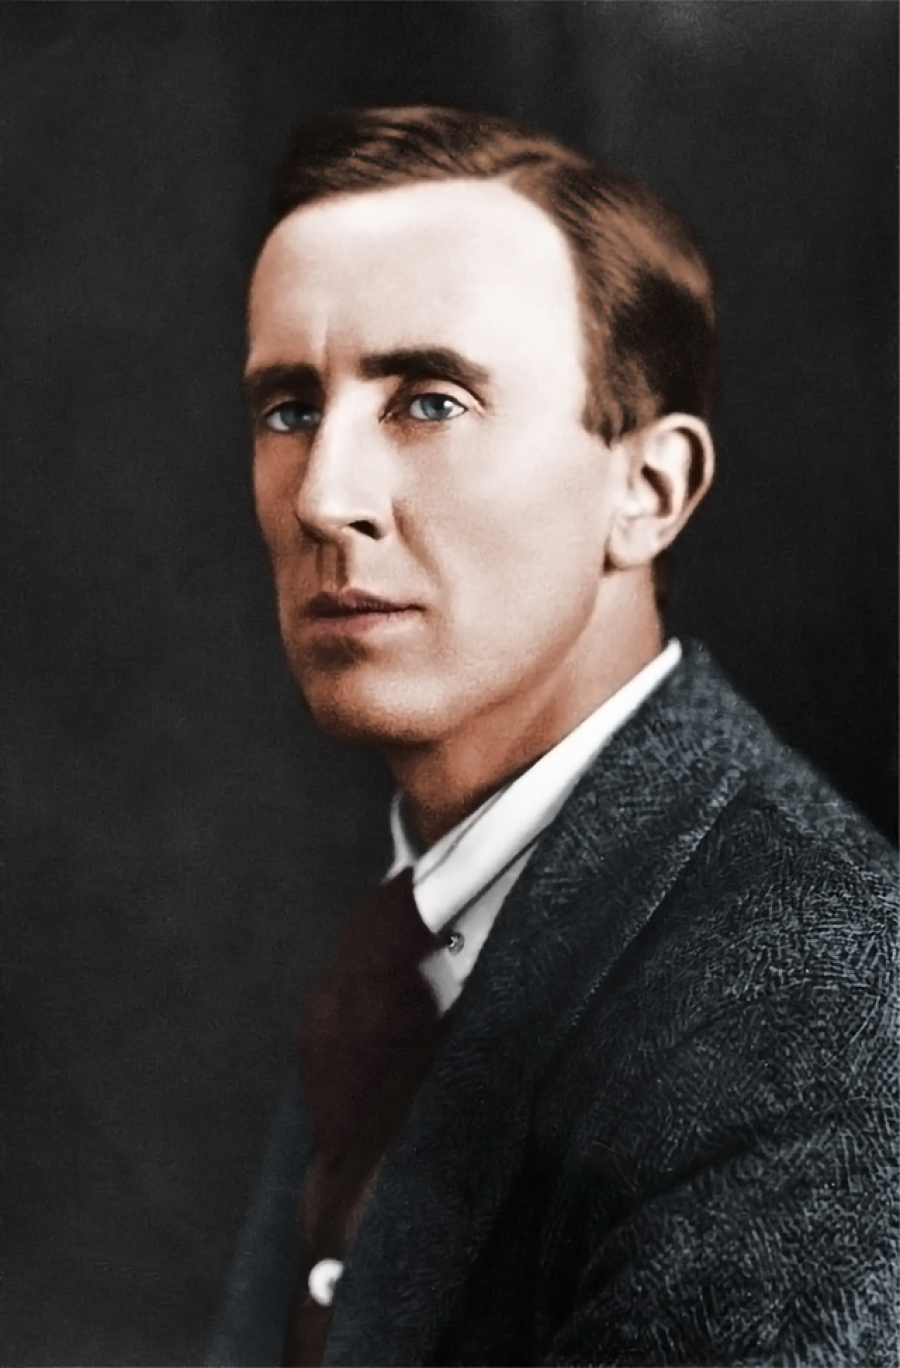 J.R.R. Tolkien ca. 1925